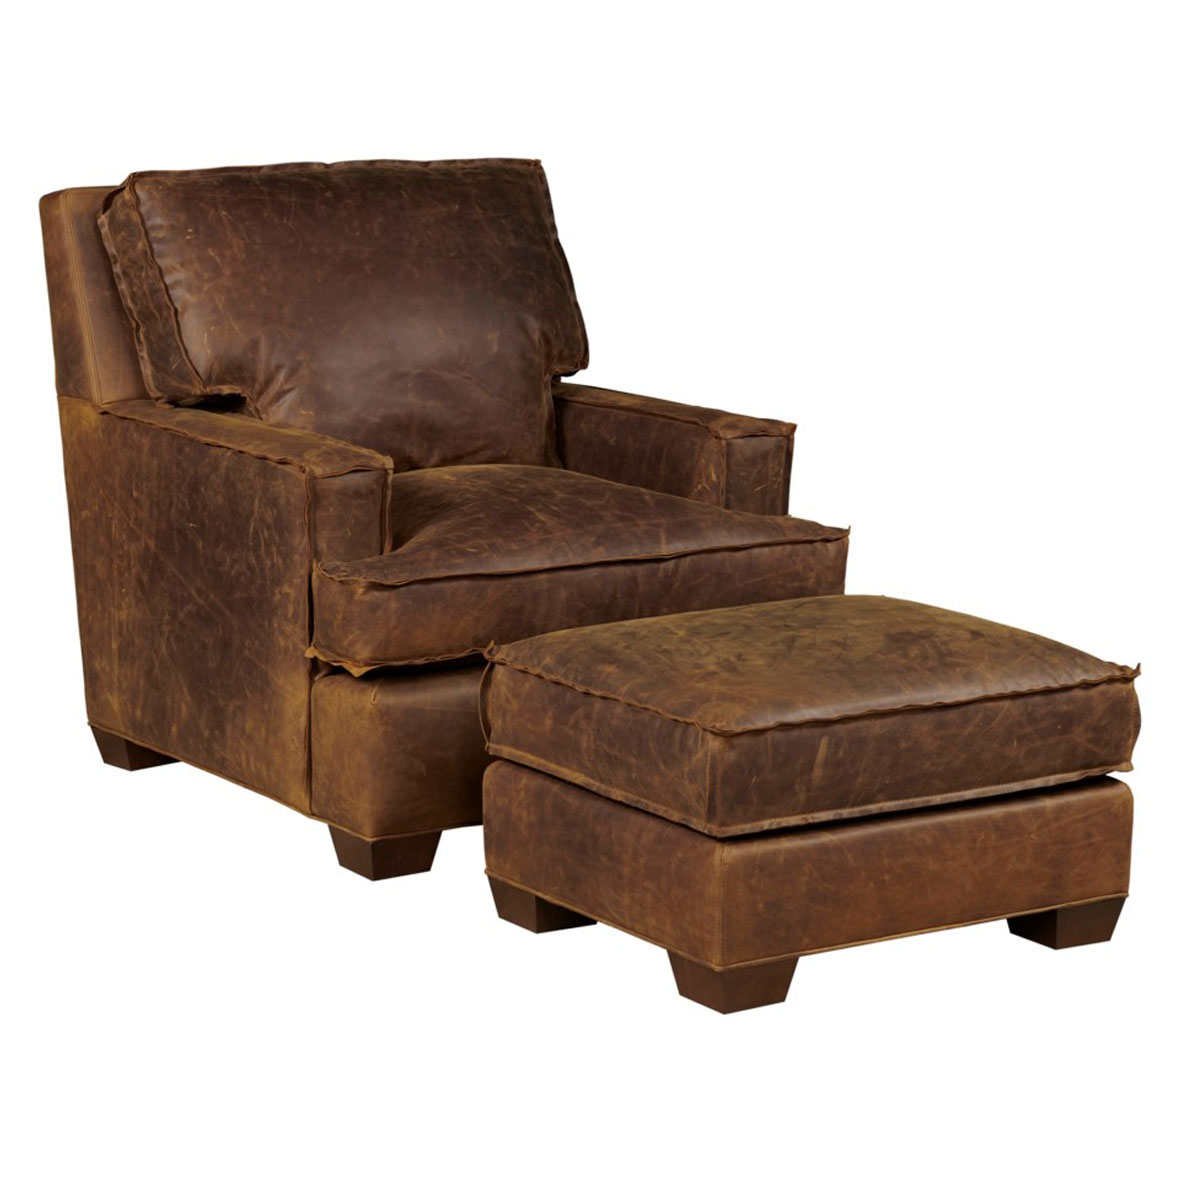 Our House 547 Bingeborough Chair and 547-O Bingeborough Ottoman